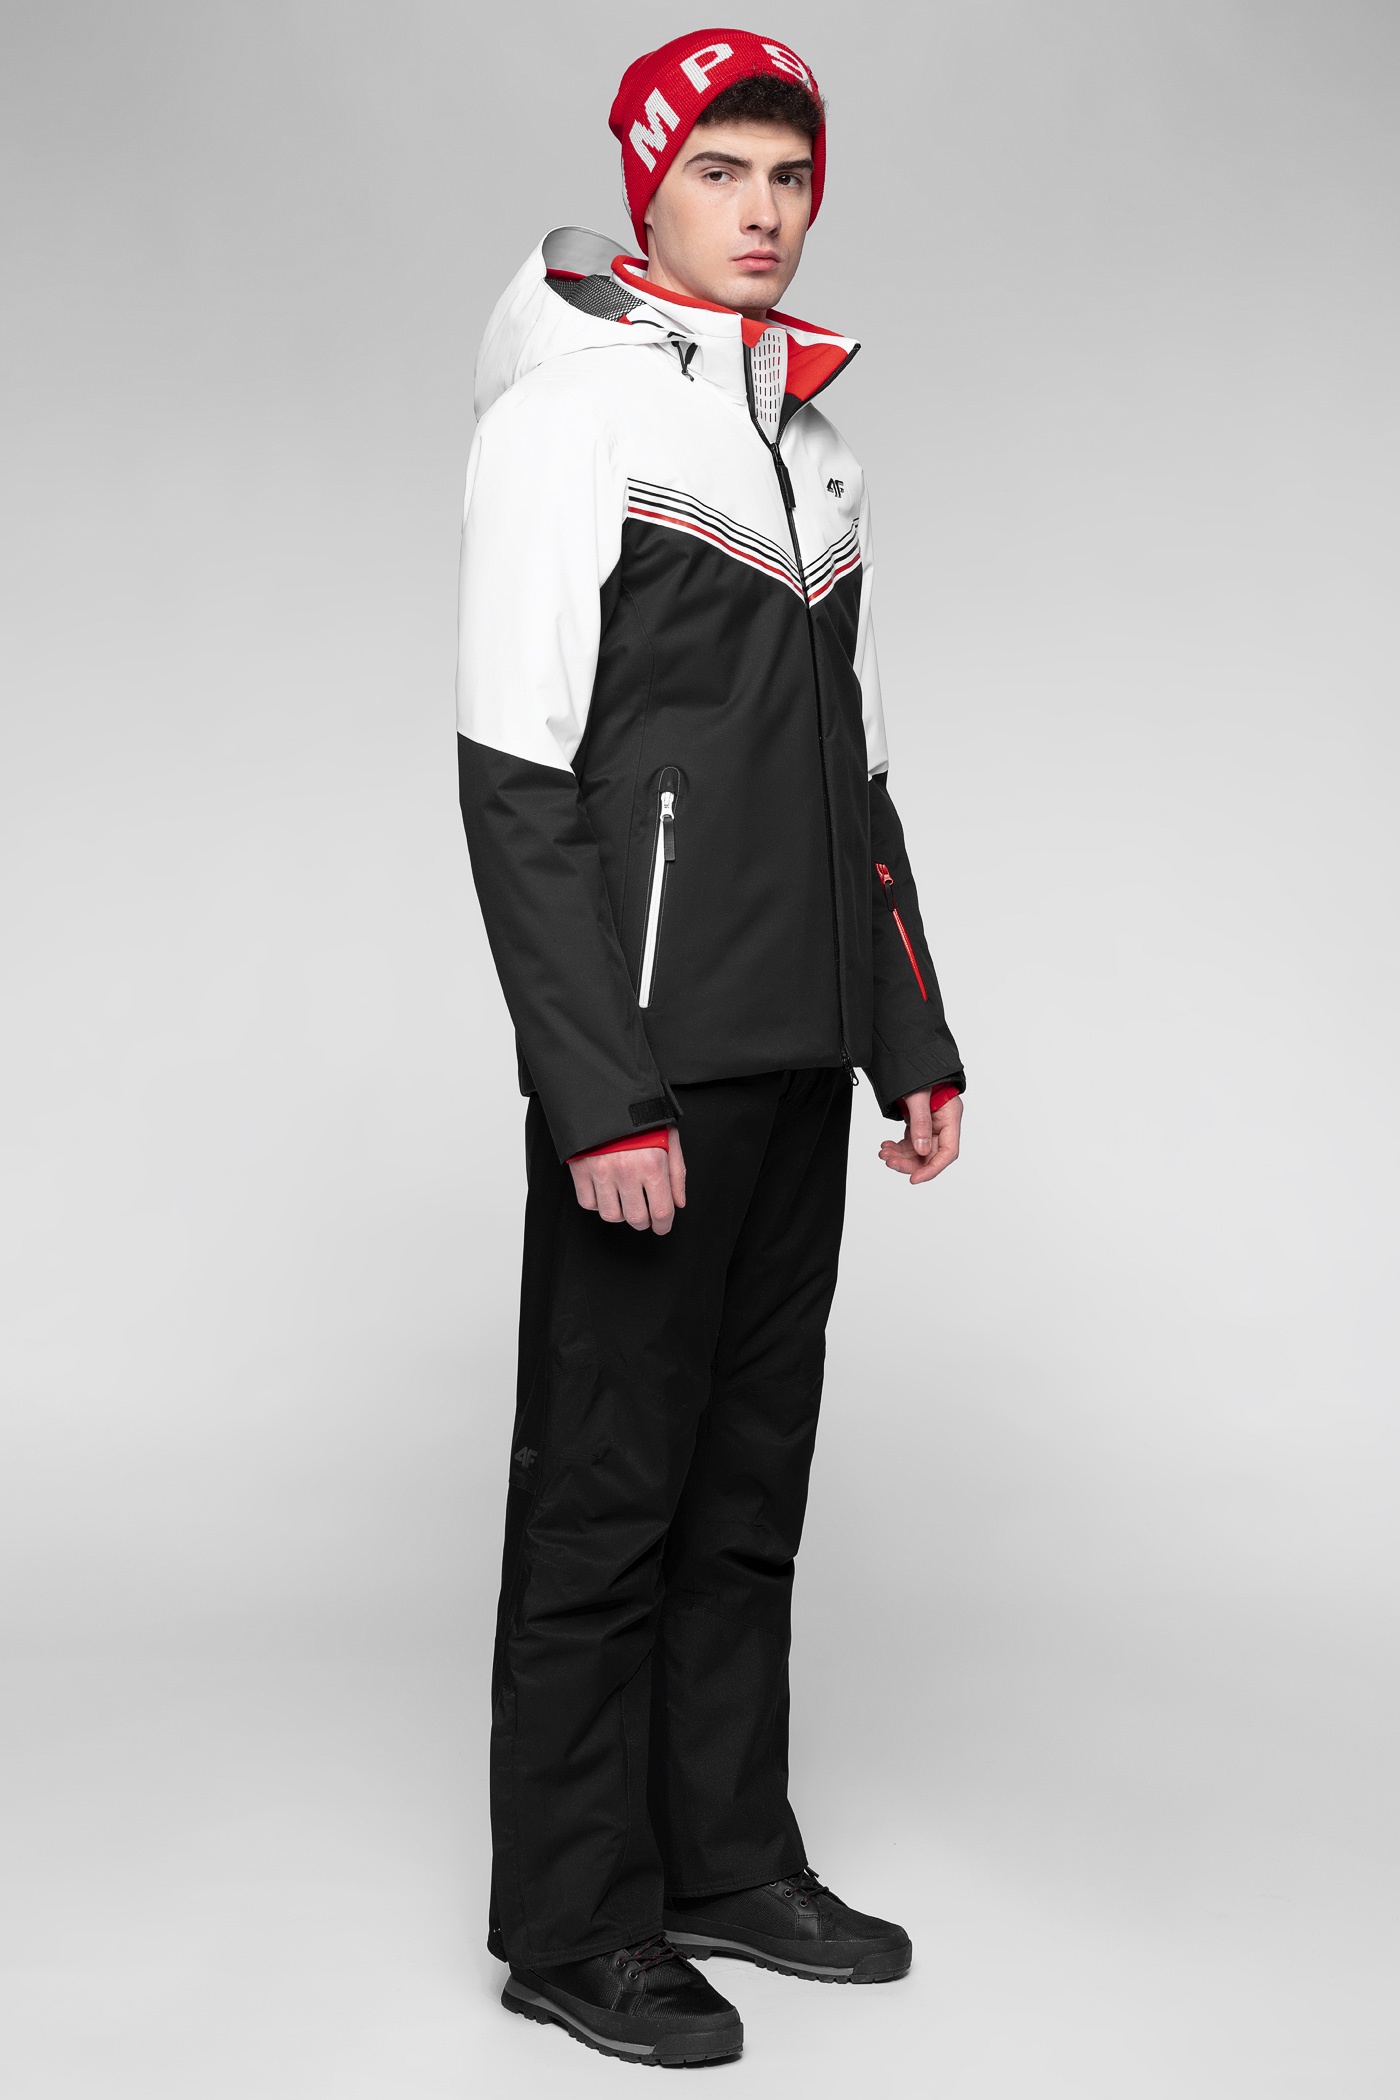 Geci Ski & Snow -  4f Men Ski Jacket KUMN901